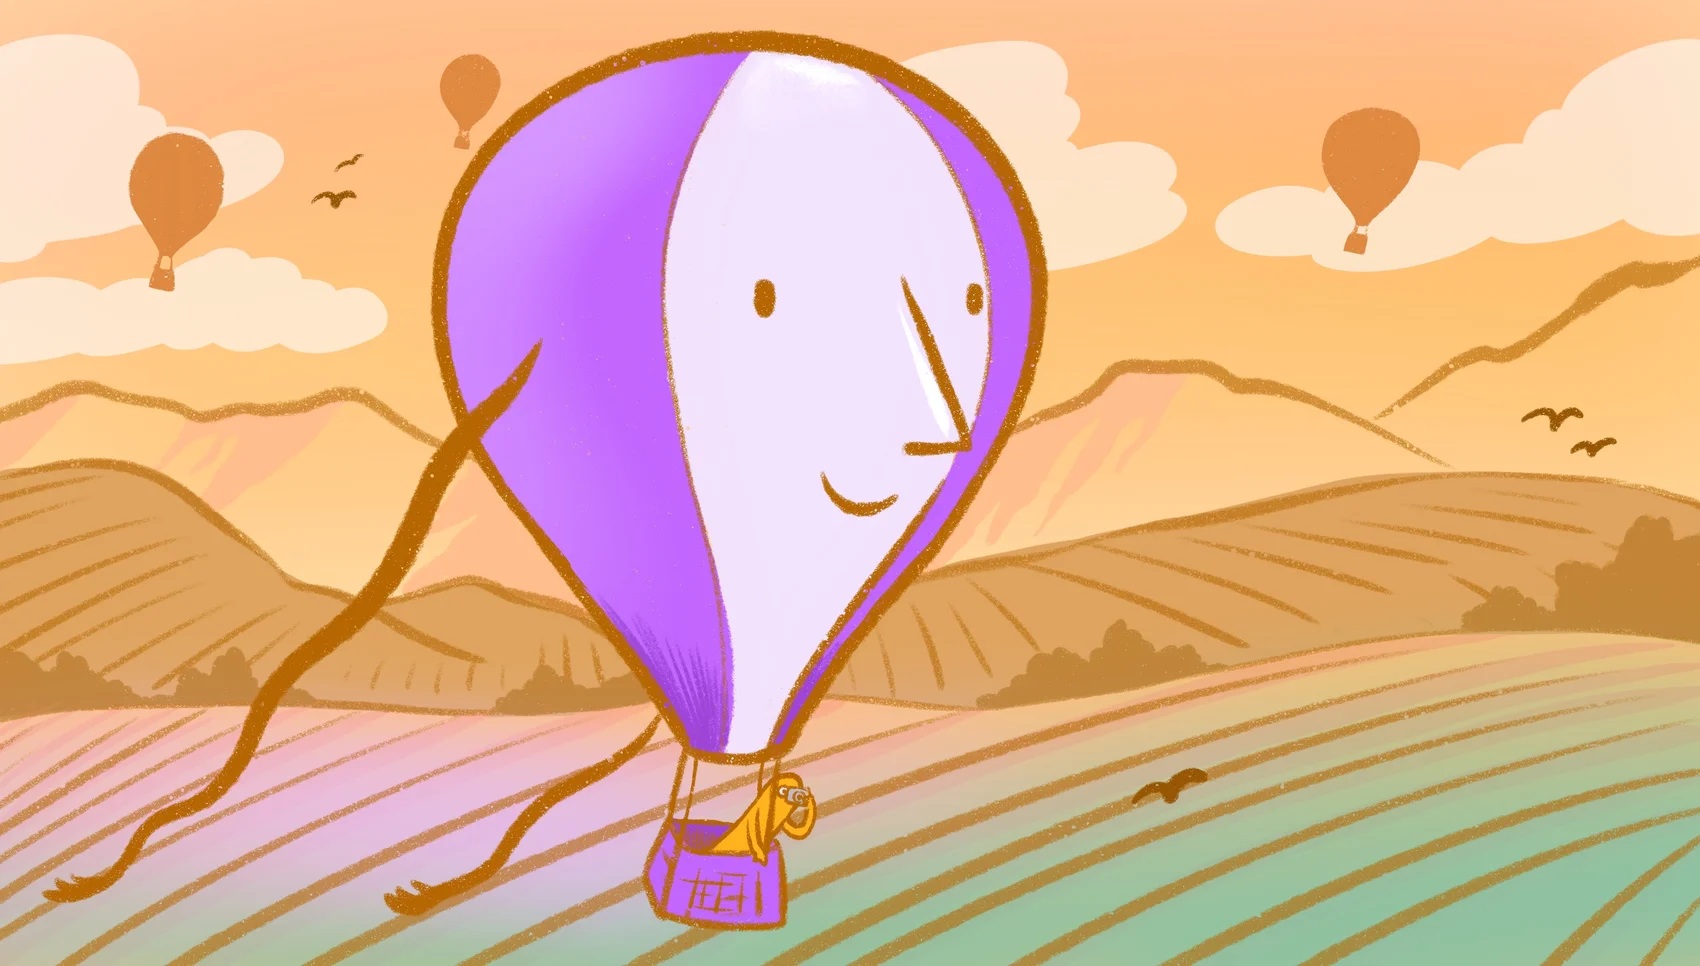 A purple hot air balloon soaring through the sky.